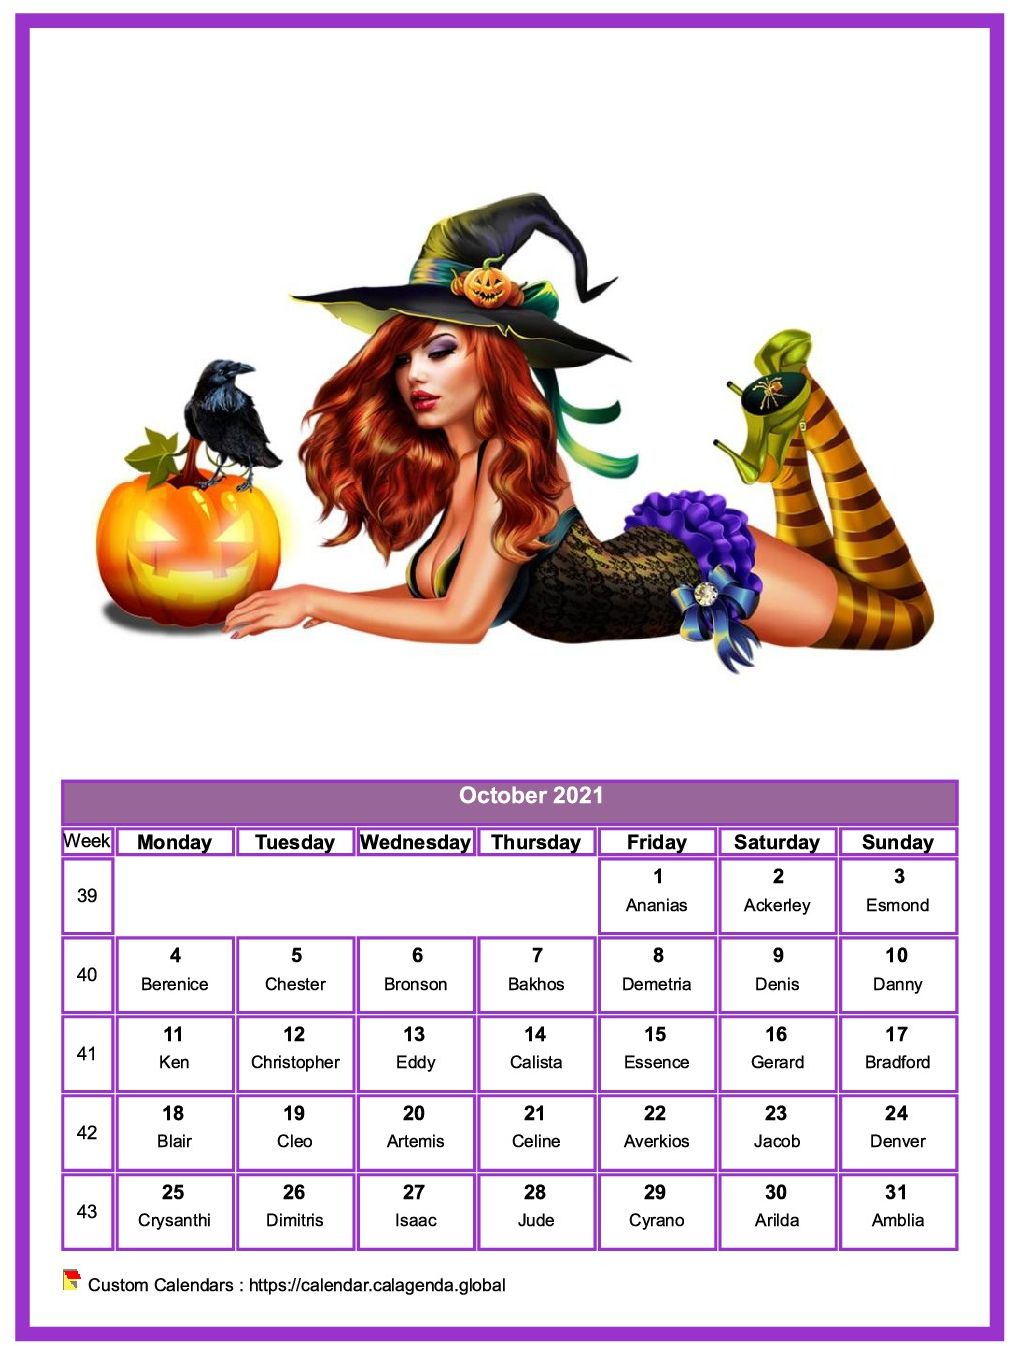 Calendar October 2021 women